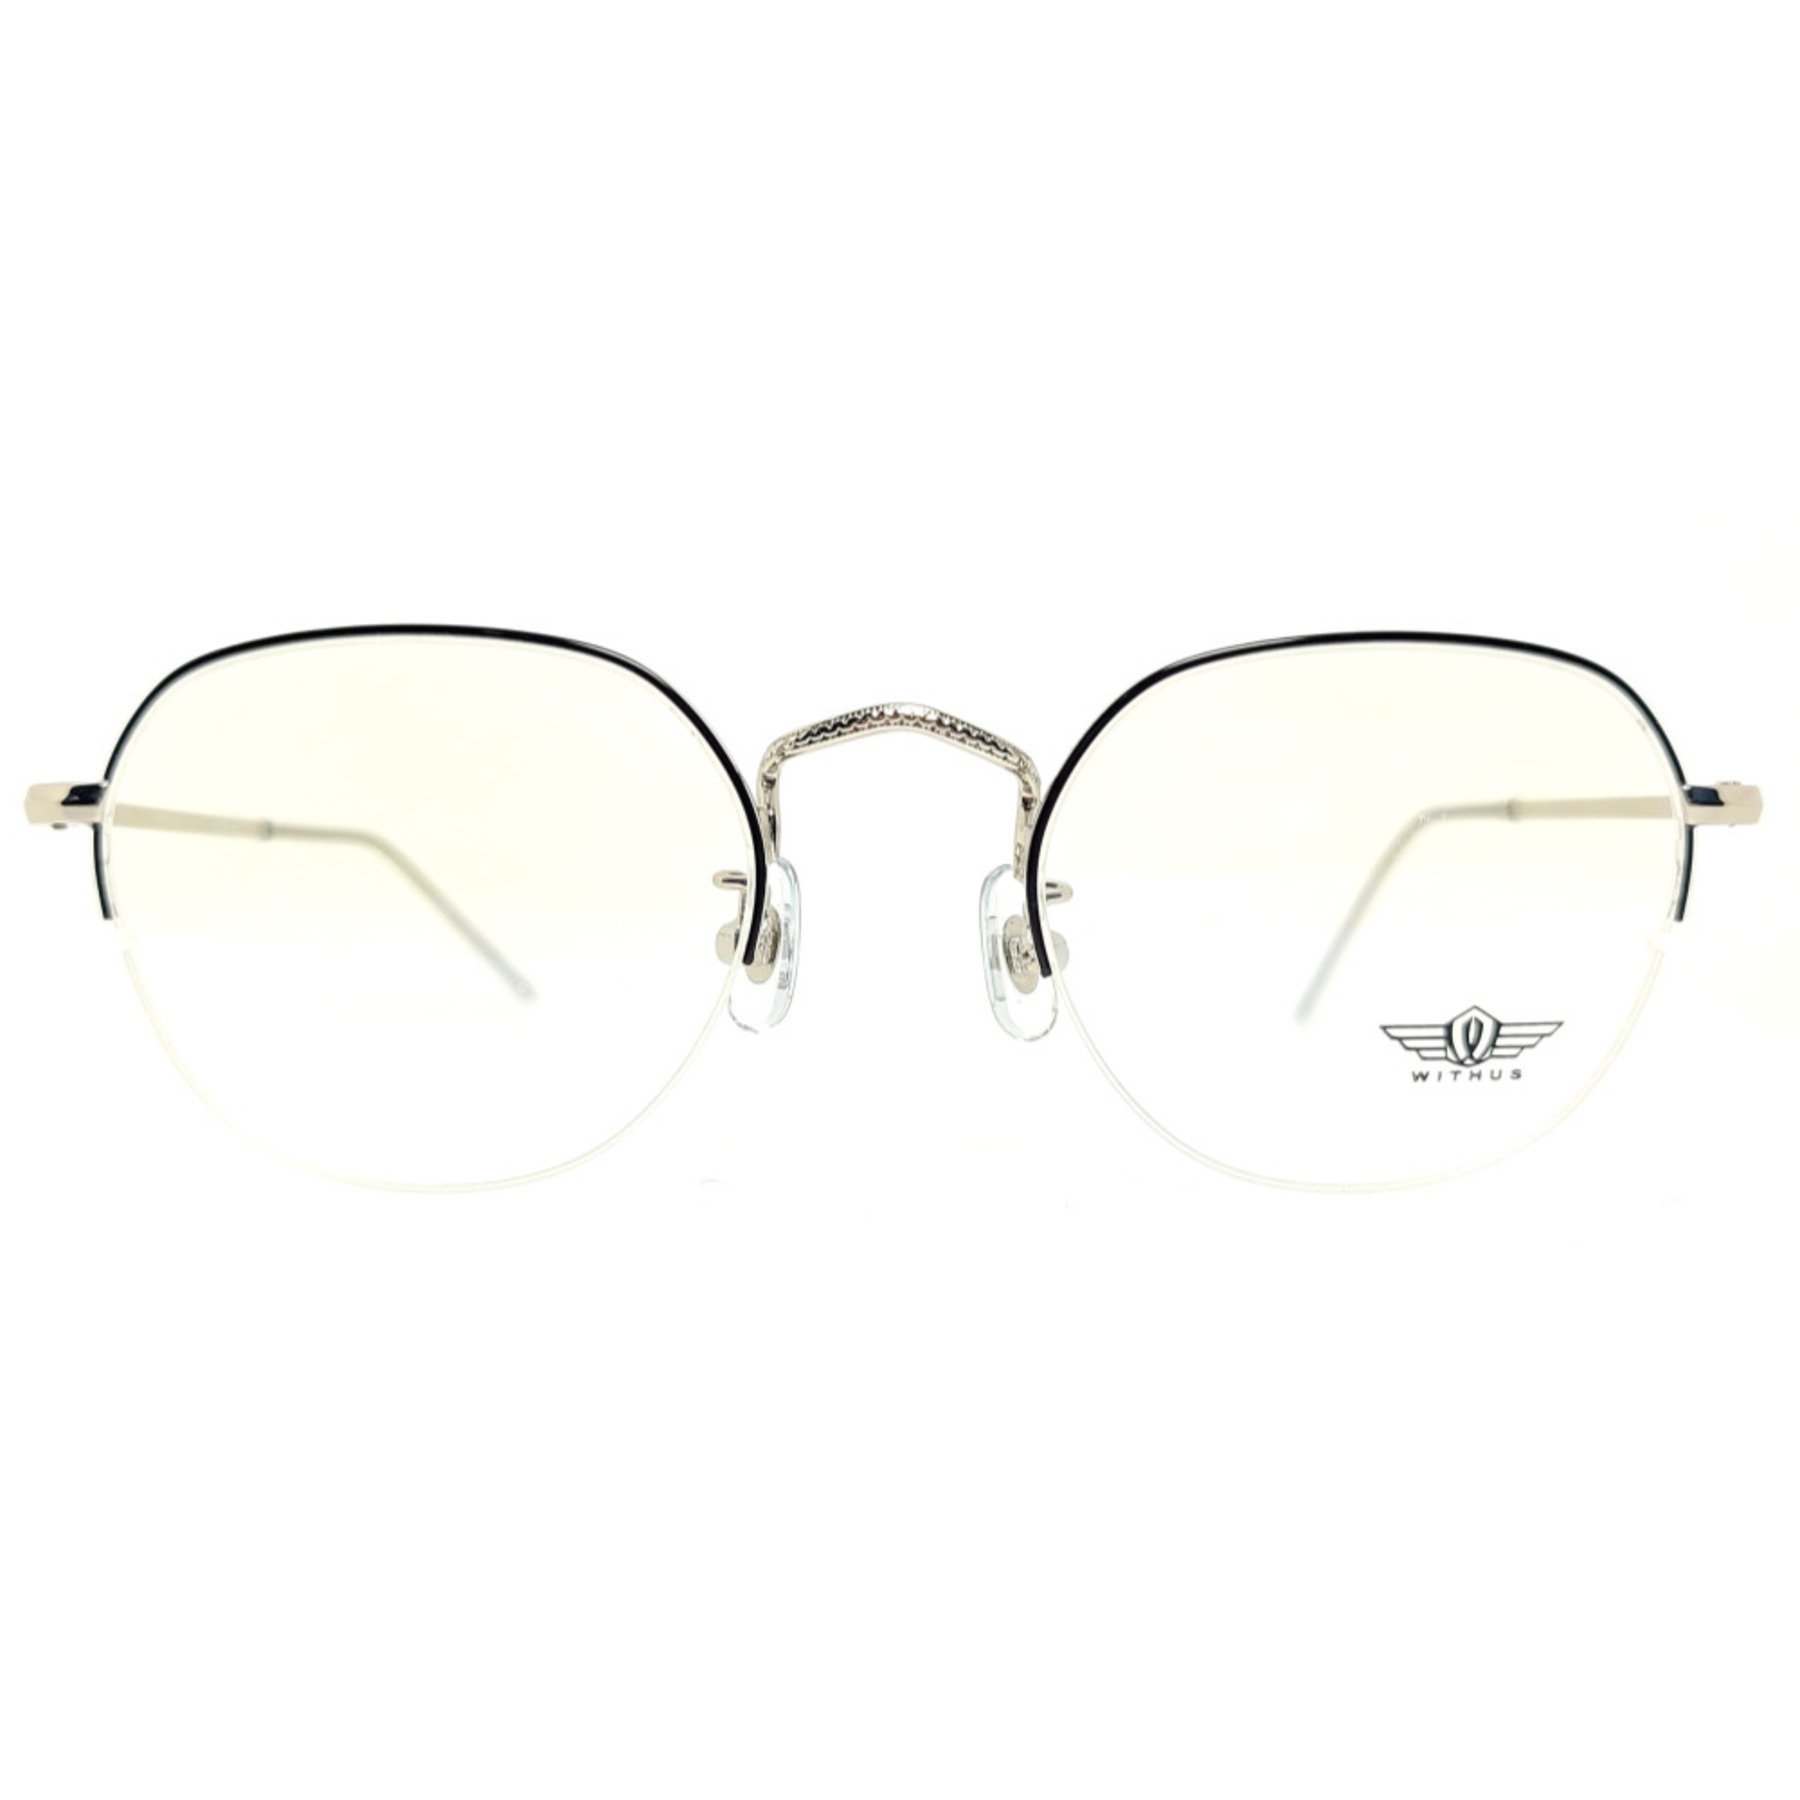 WITHUS-7382, Korean glasses, sunglasses, eyeglasses, glasses